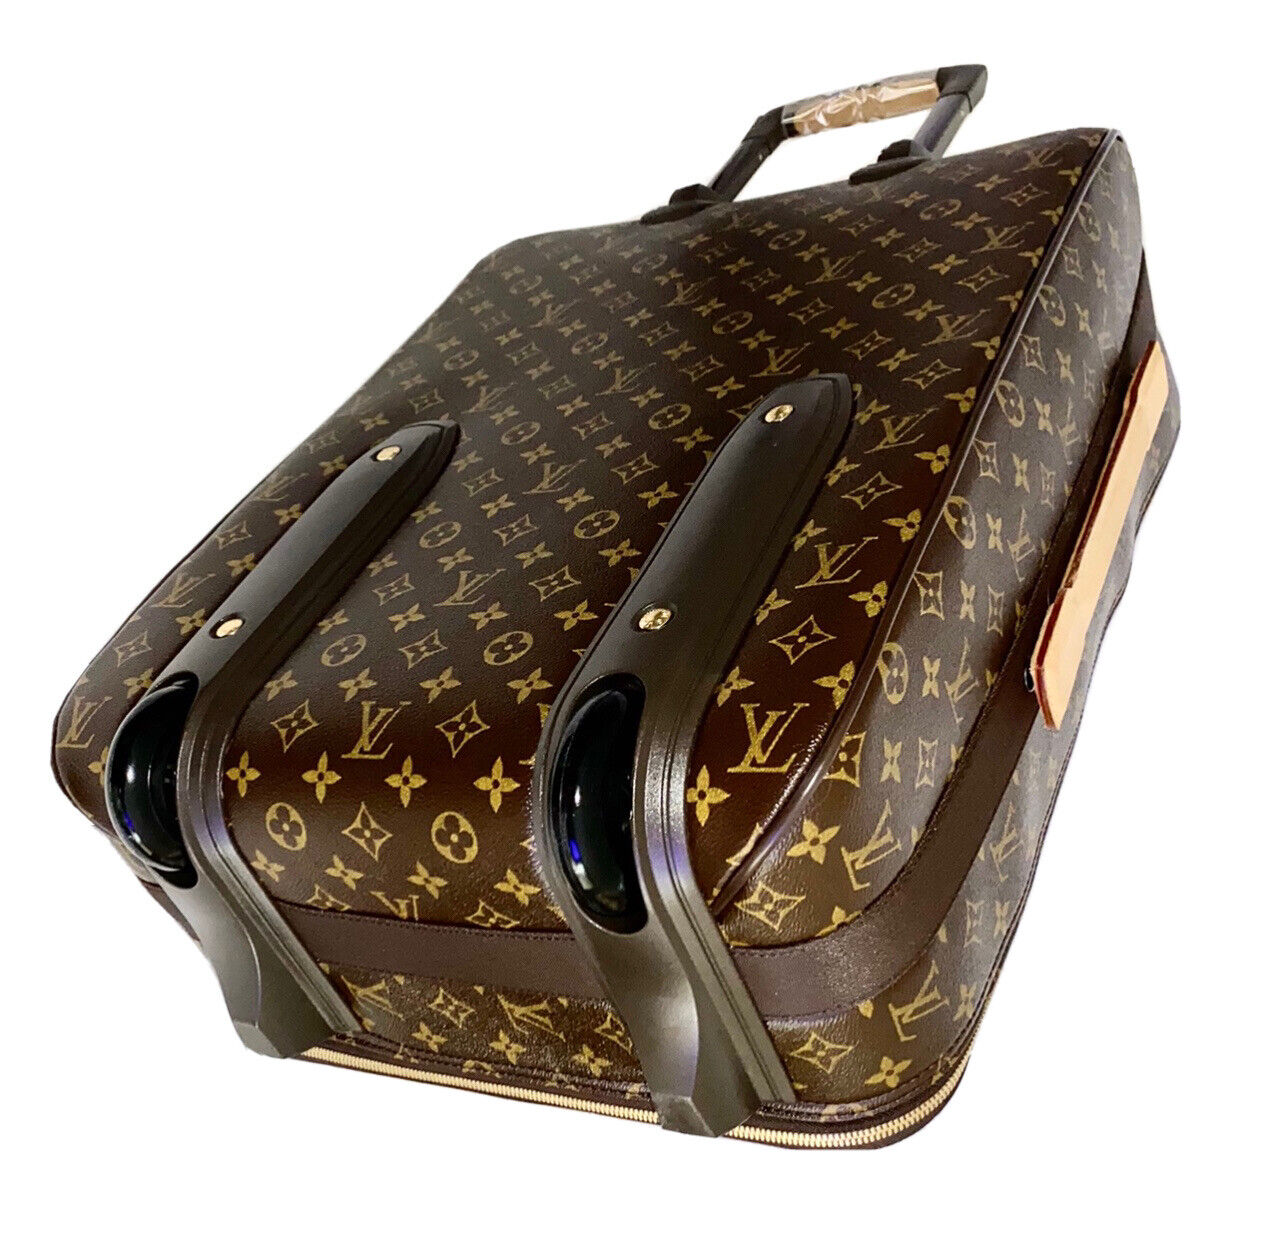 Louis Vuitton Pegase 55 Carry-on Suitcase Bag w/ Name Tag Dustbag SD0045